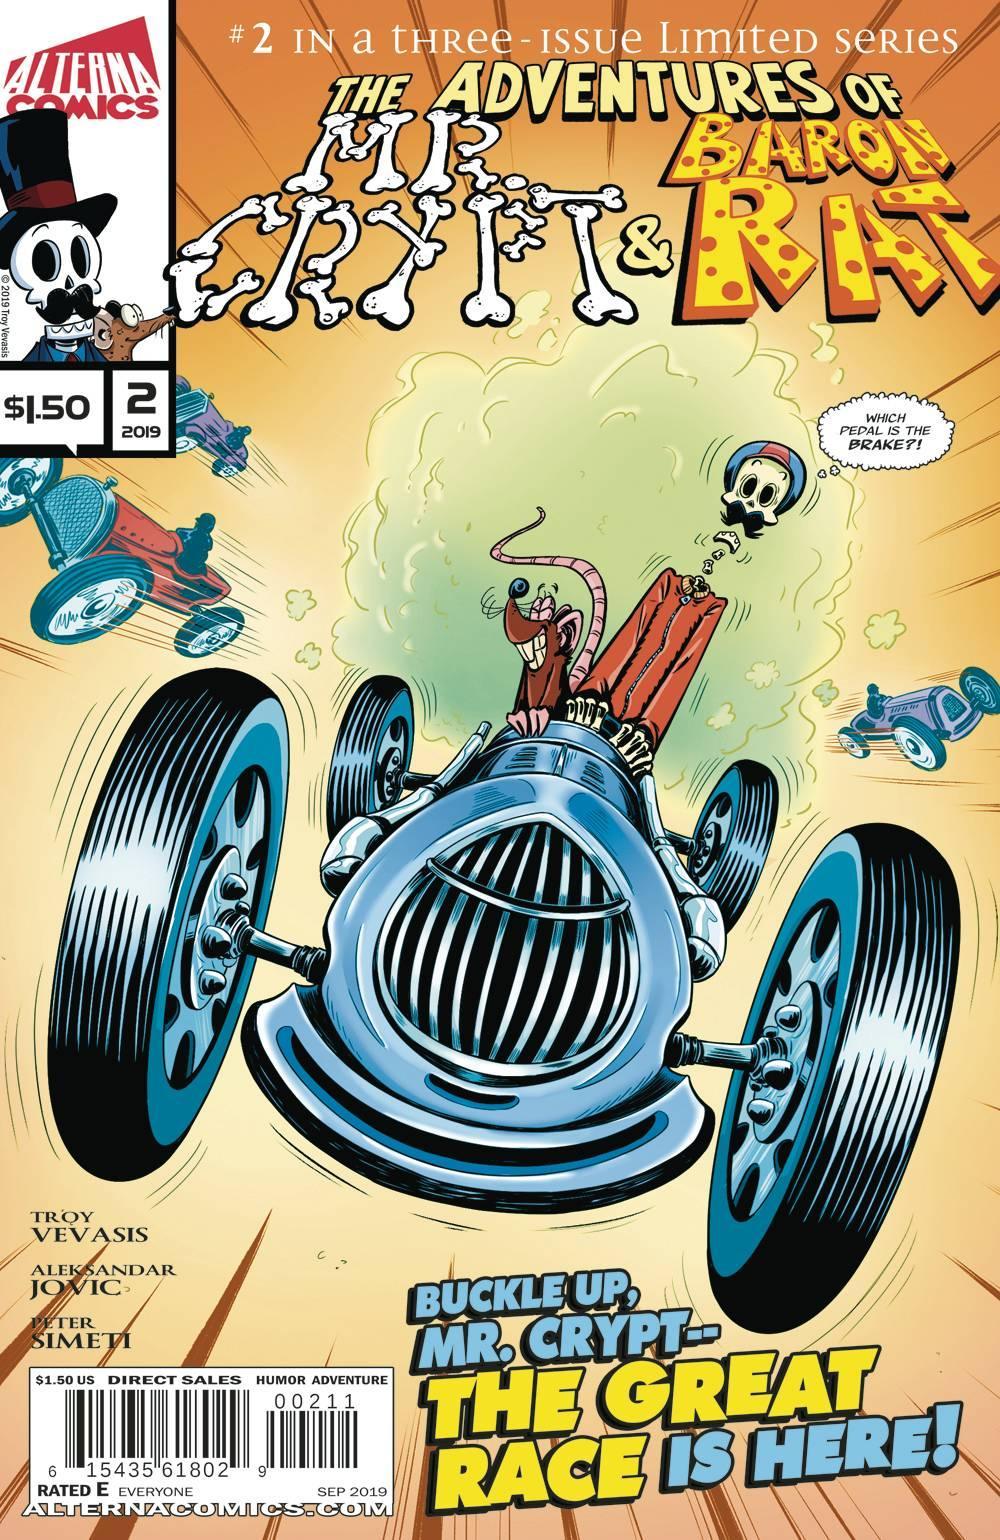 ADV OF MR CRYPT & BARON RAT #2 - Kings Comics